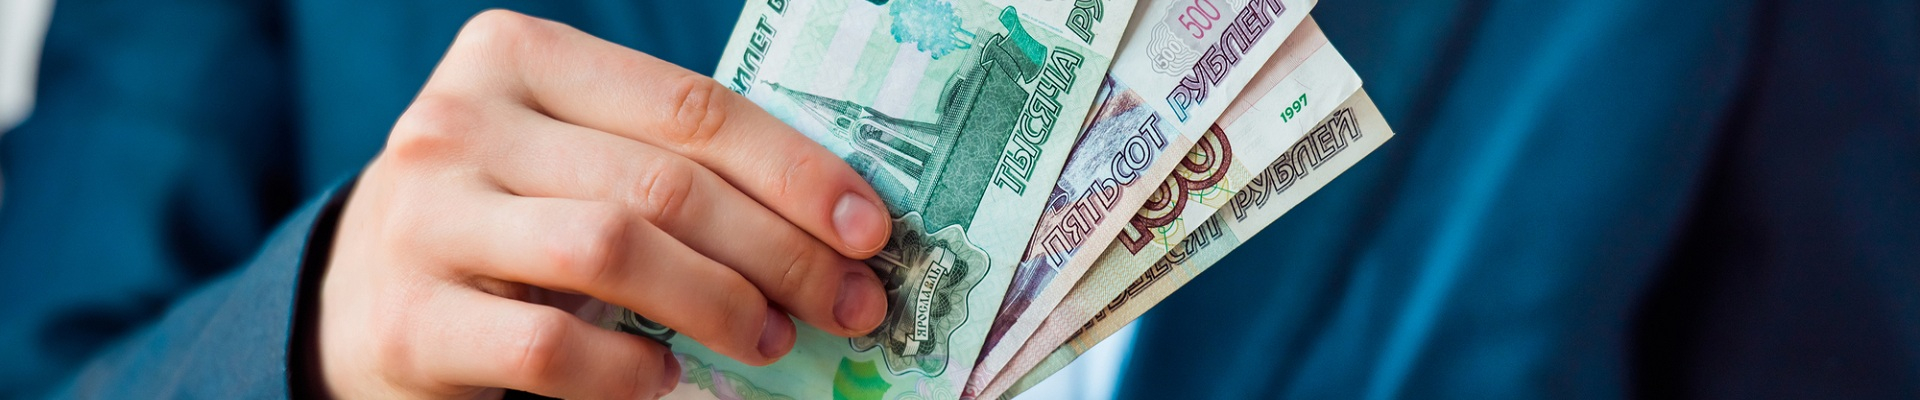 По статистике за последнее время в кредитной сфере России возросло количество займов «до зарплаты»